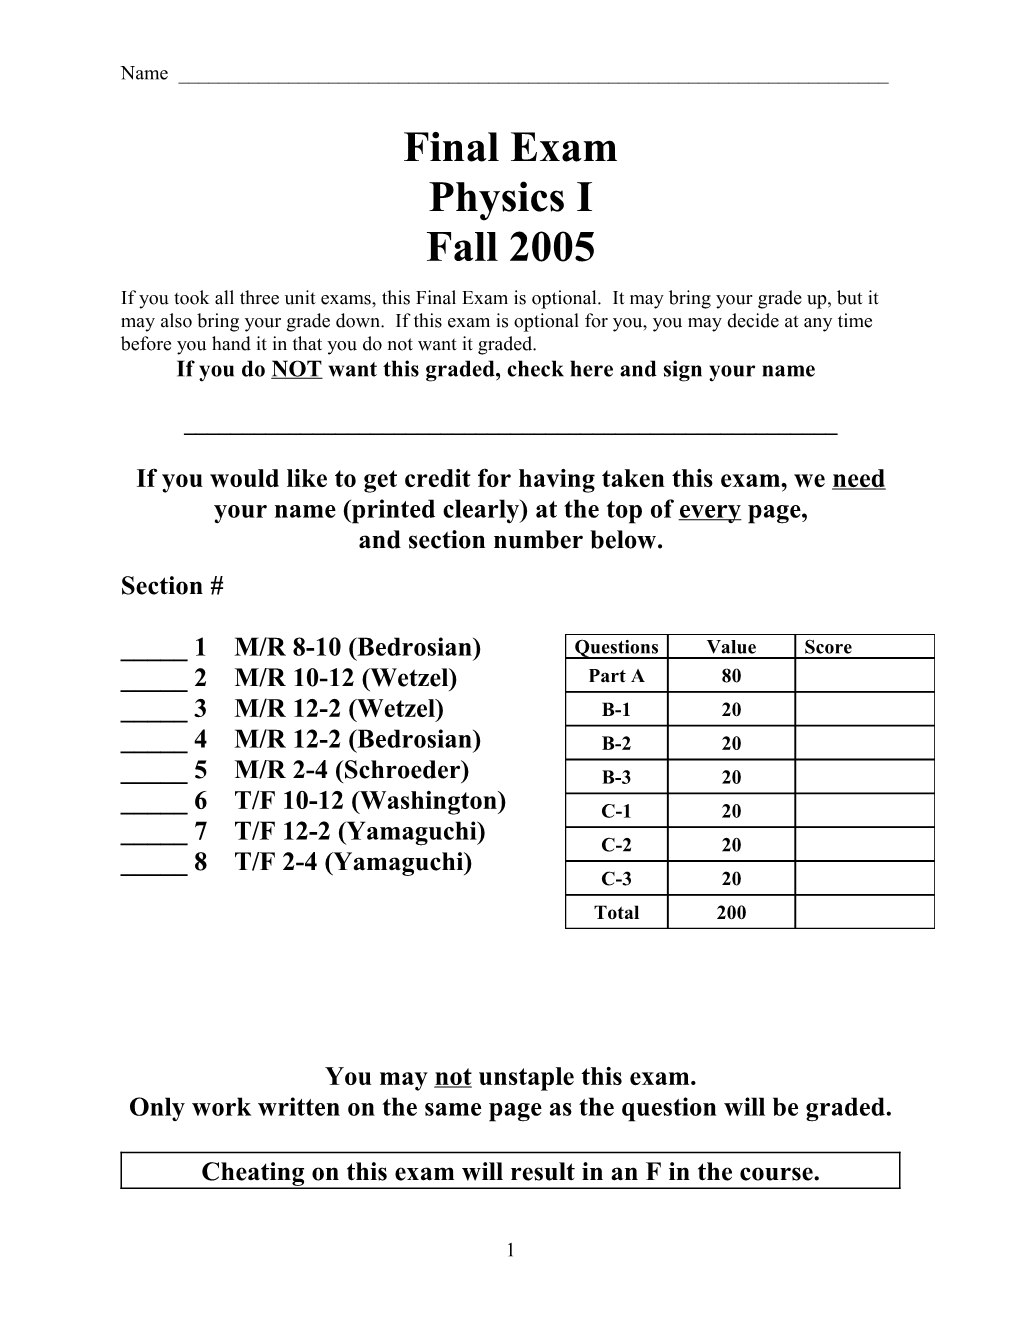 Physics I Final Exam Spring 2003